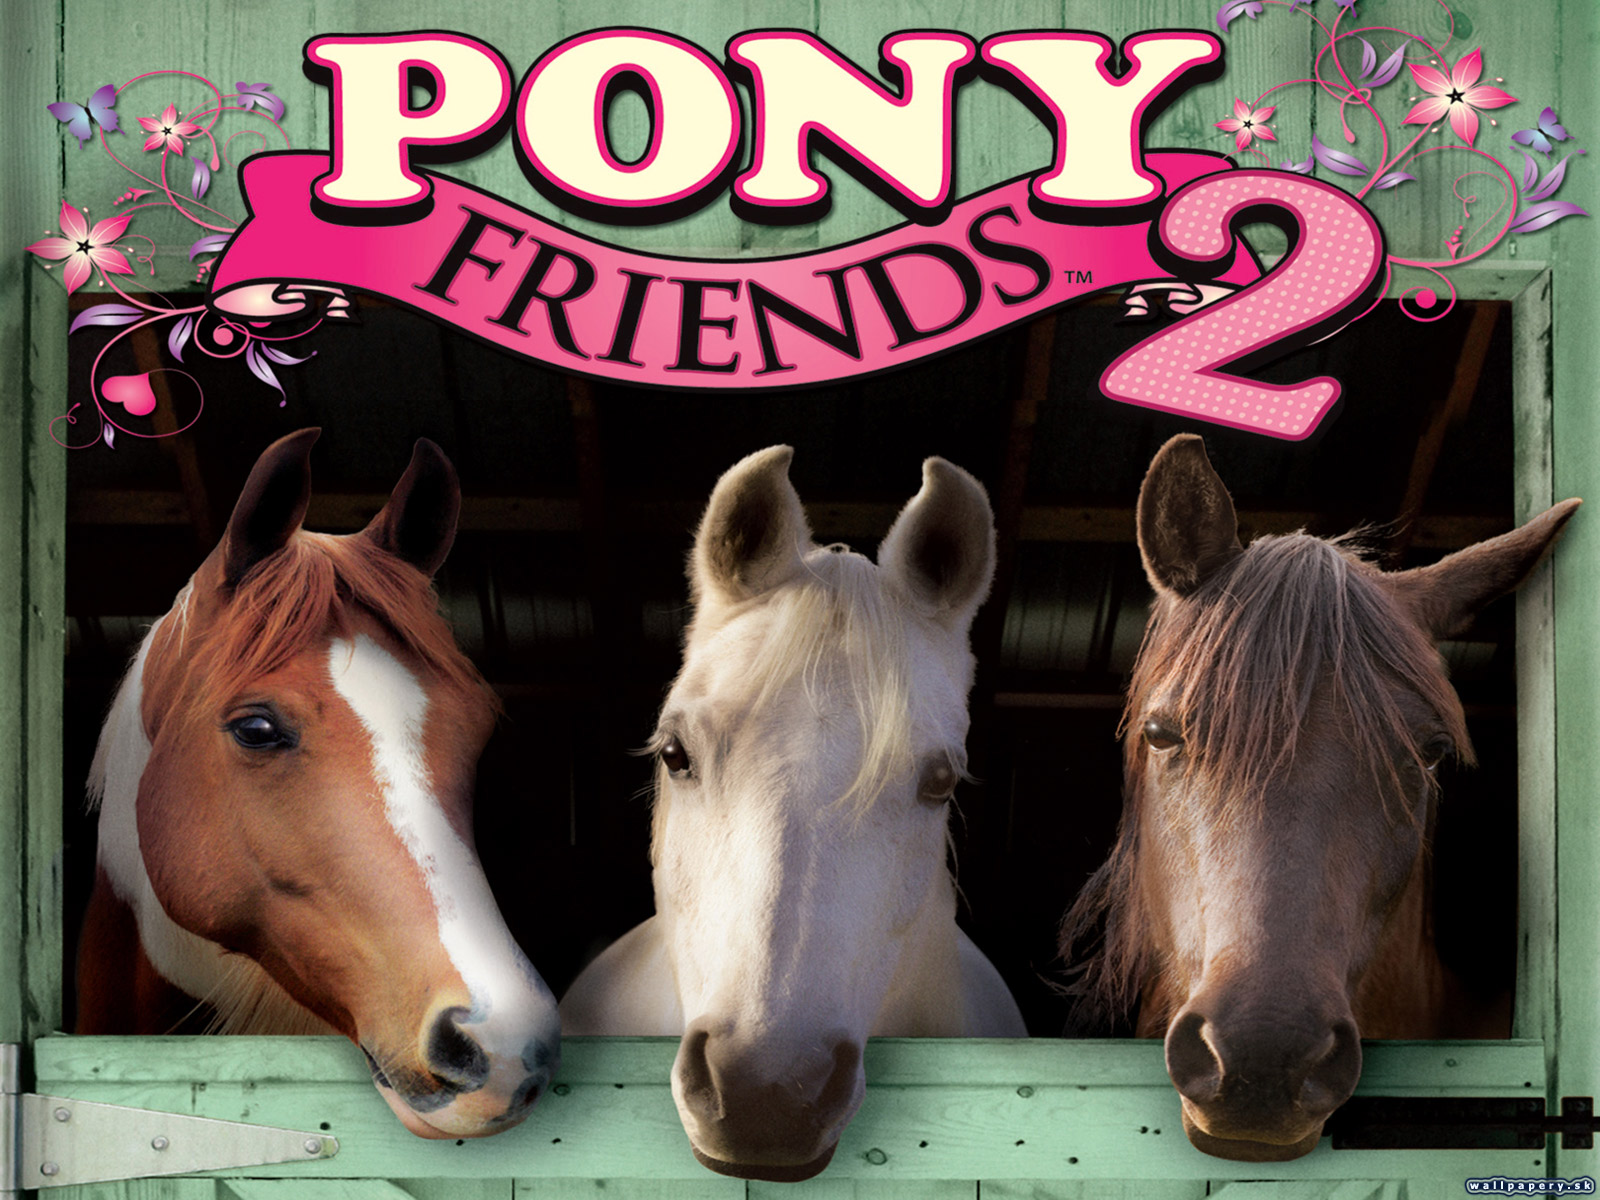 Френд 2. Pony friends 2. Четвероногие друзья мой пони.